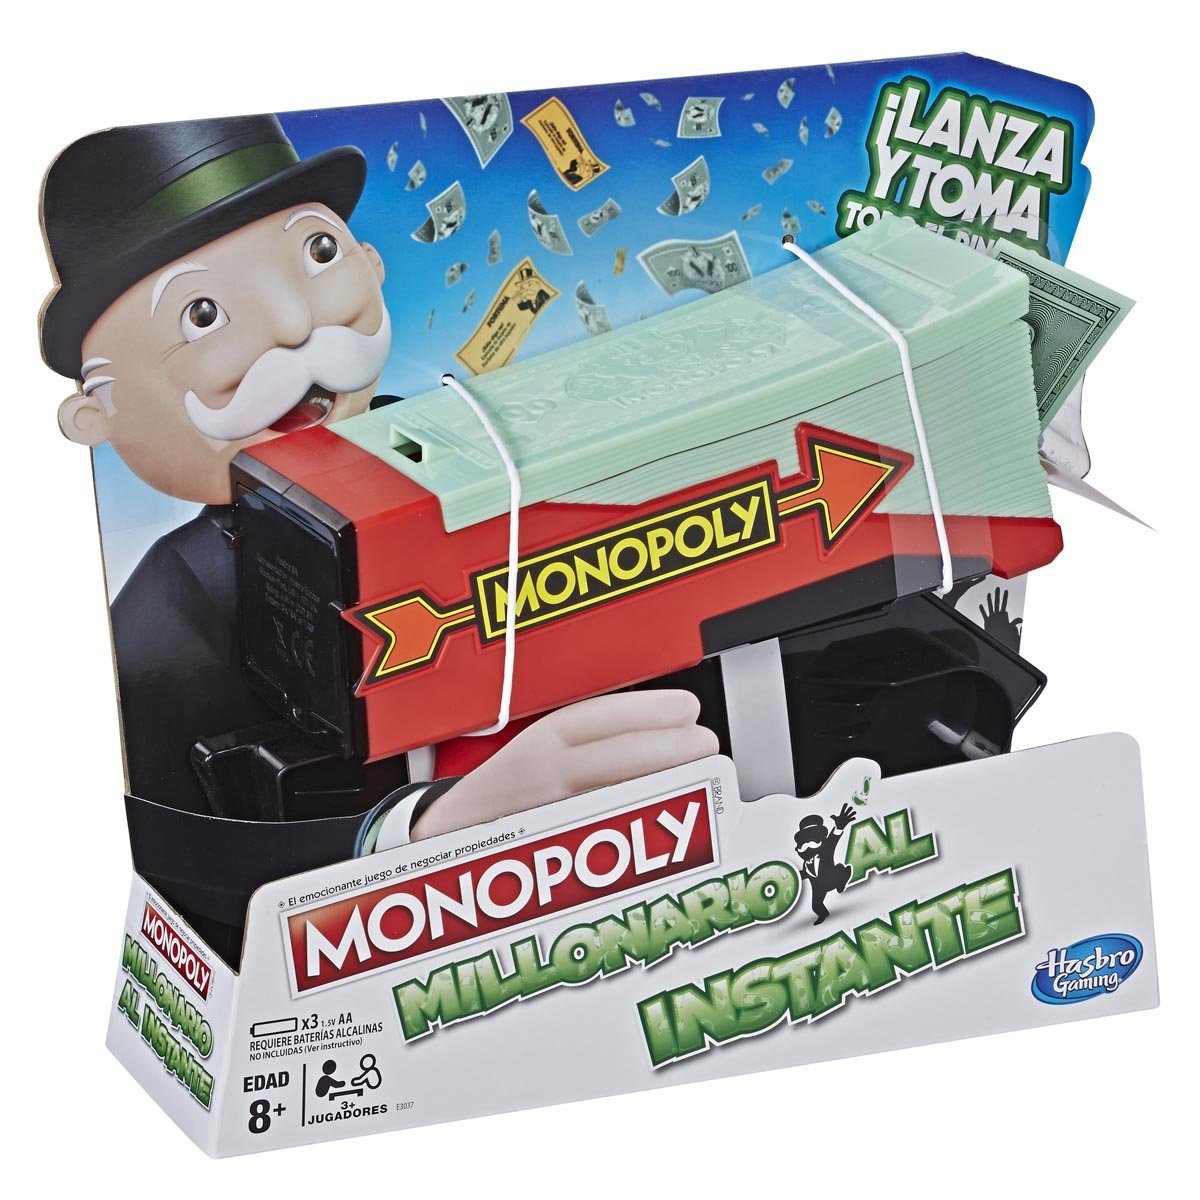 Monopoly Millonario al Instante Hasbro - Juego de Mesa